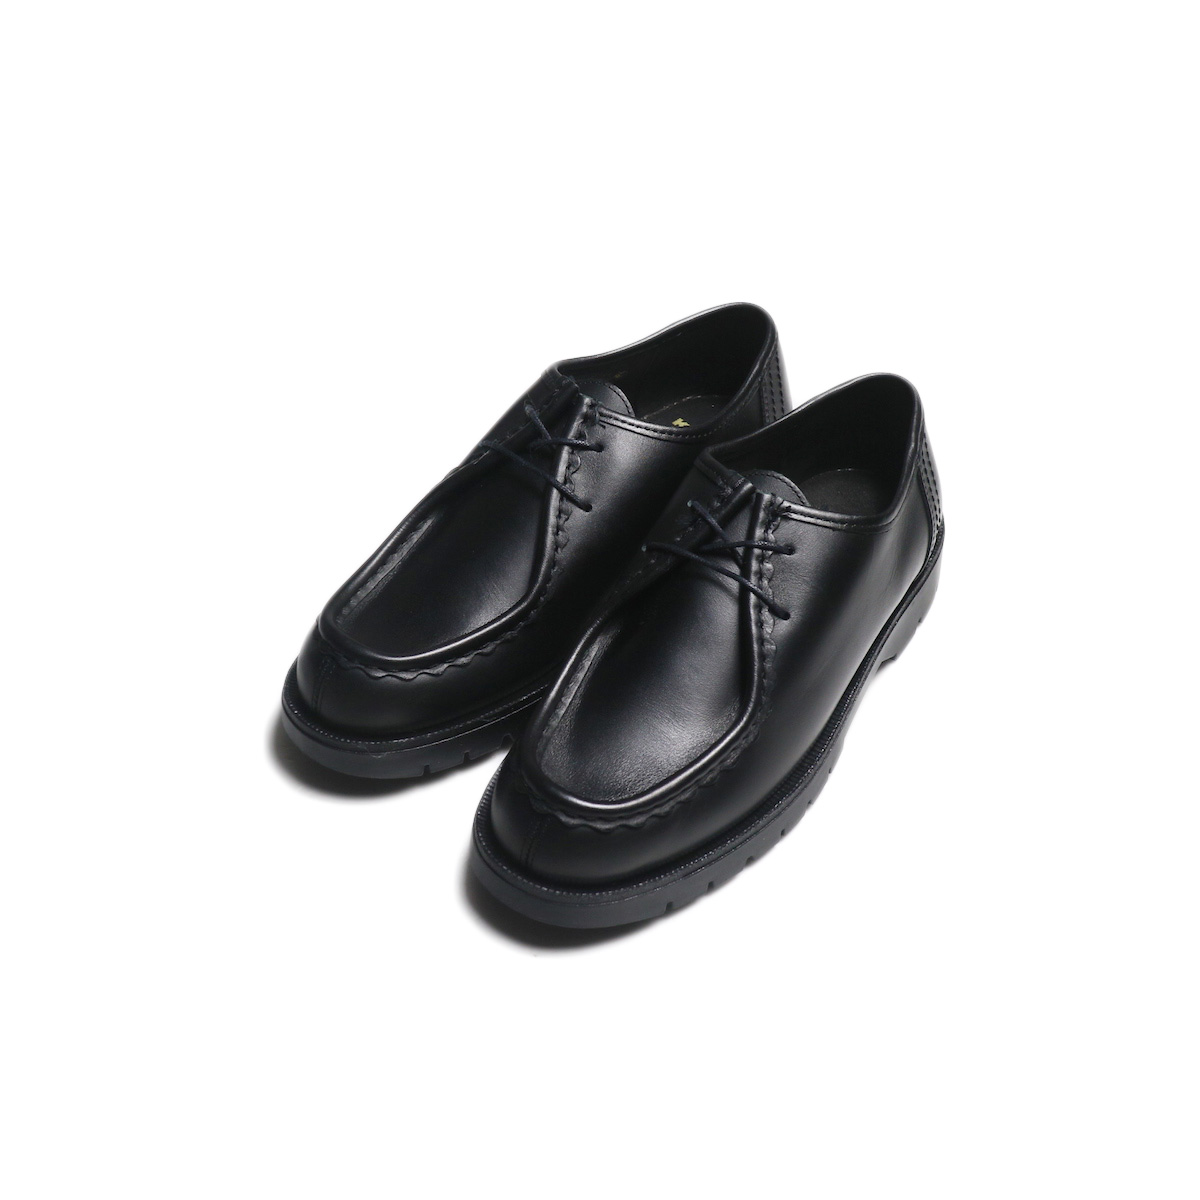 KLEMAN / "PADRE" Tyrolean Shoes (Noir)